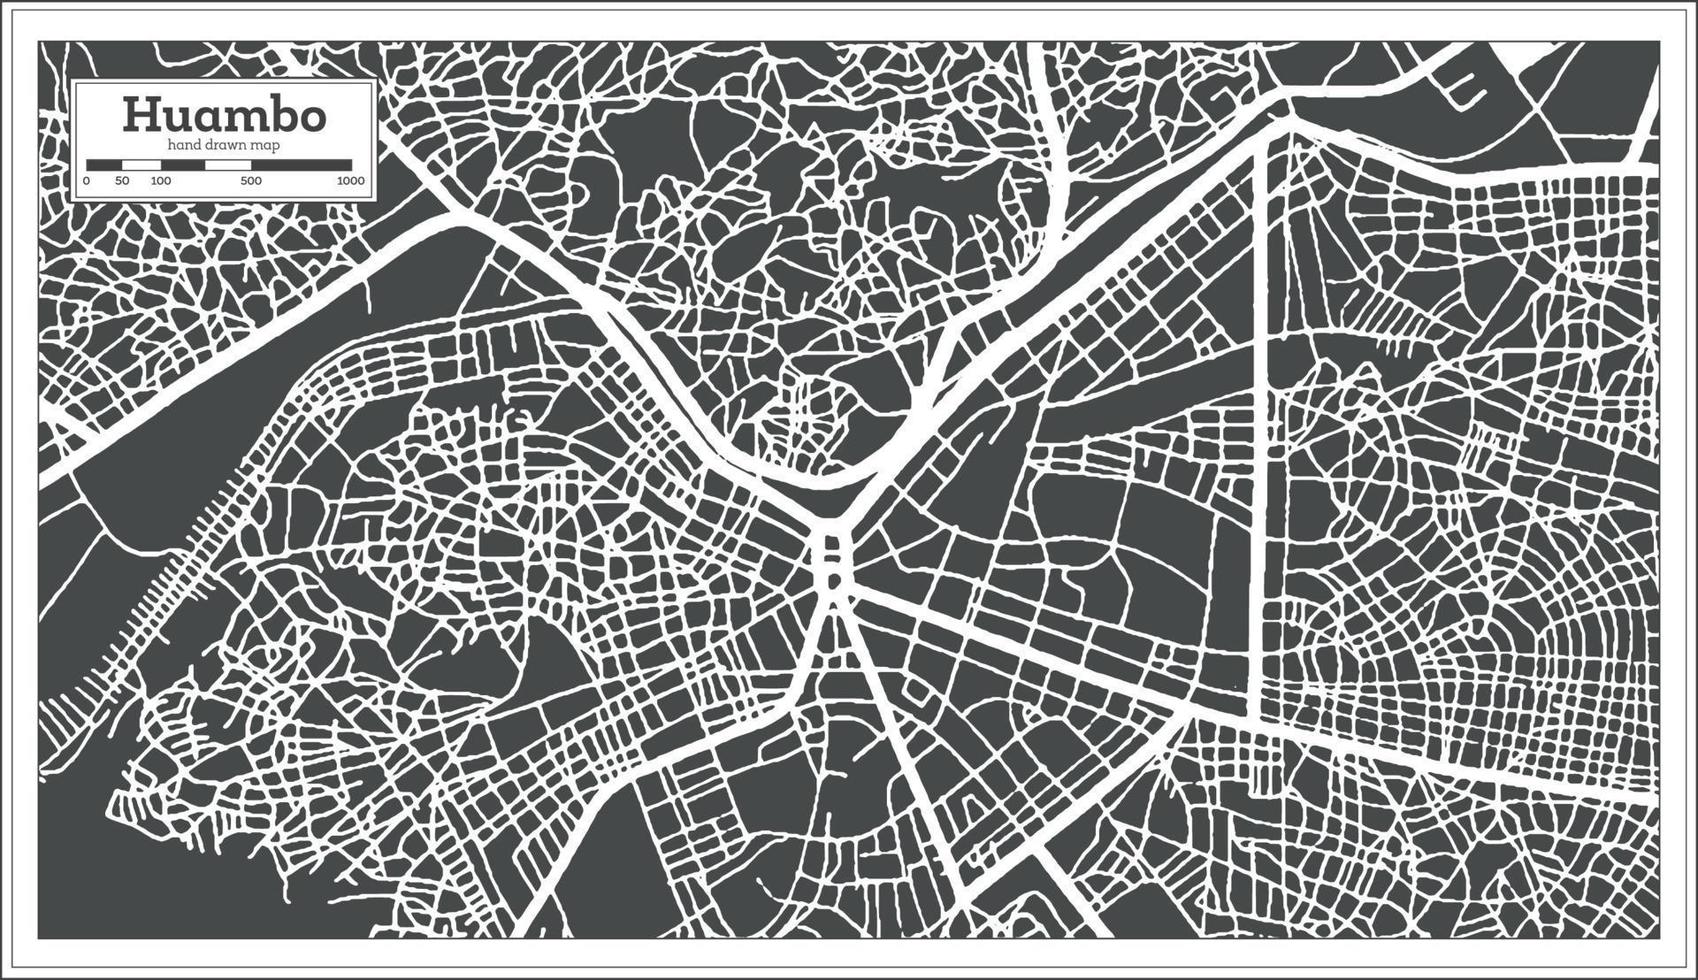 huambo angola stad Karta i svart och vit Färg i retro stil. översikt Karta. vektor